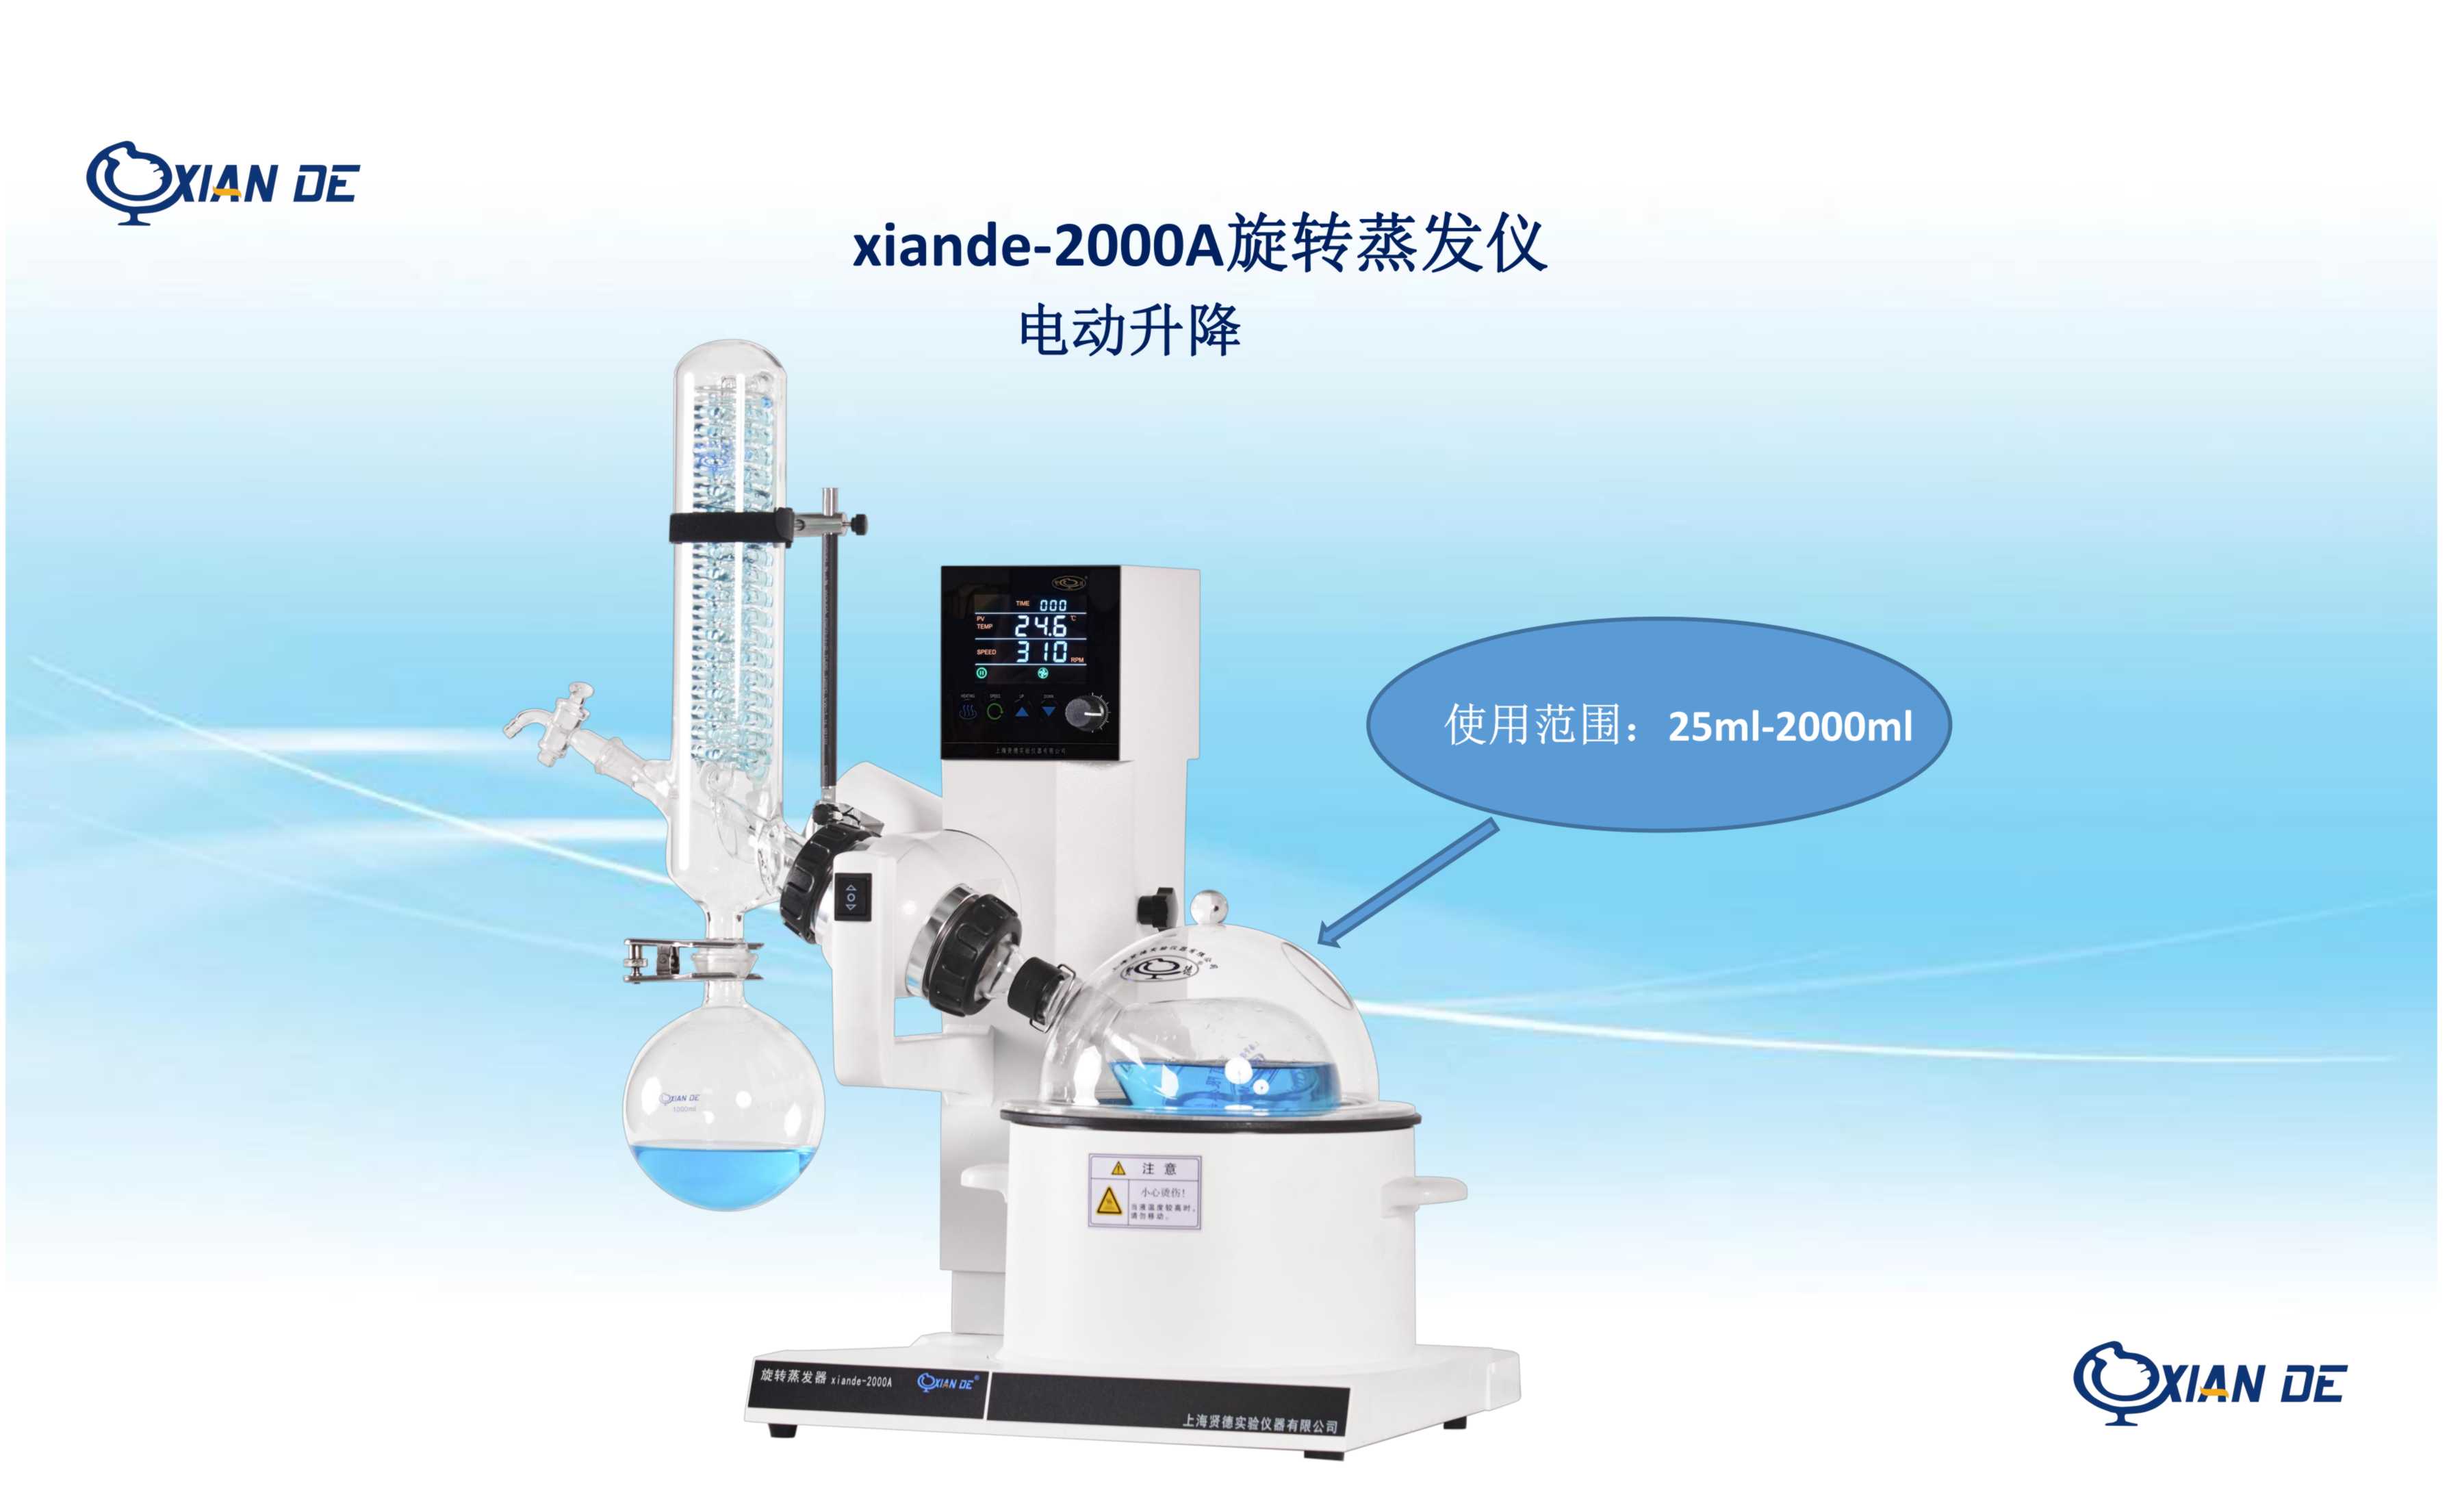 上海贤德 旋转蒸发器xiande-2000A带转速显示图片